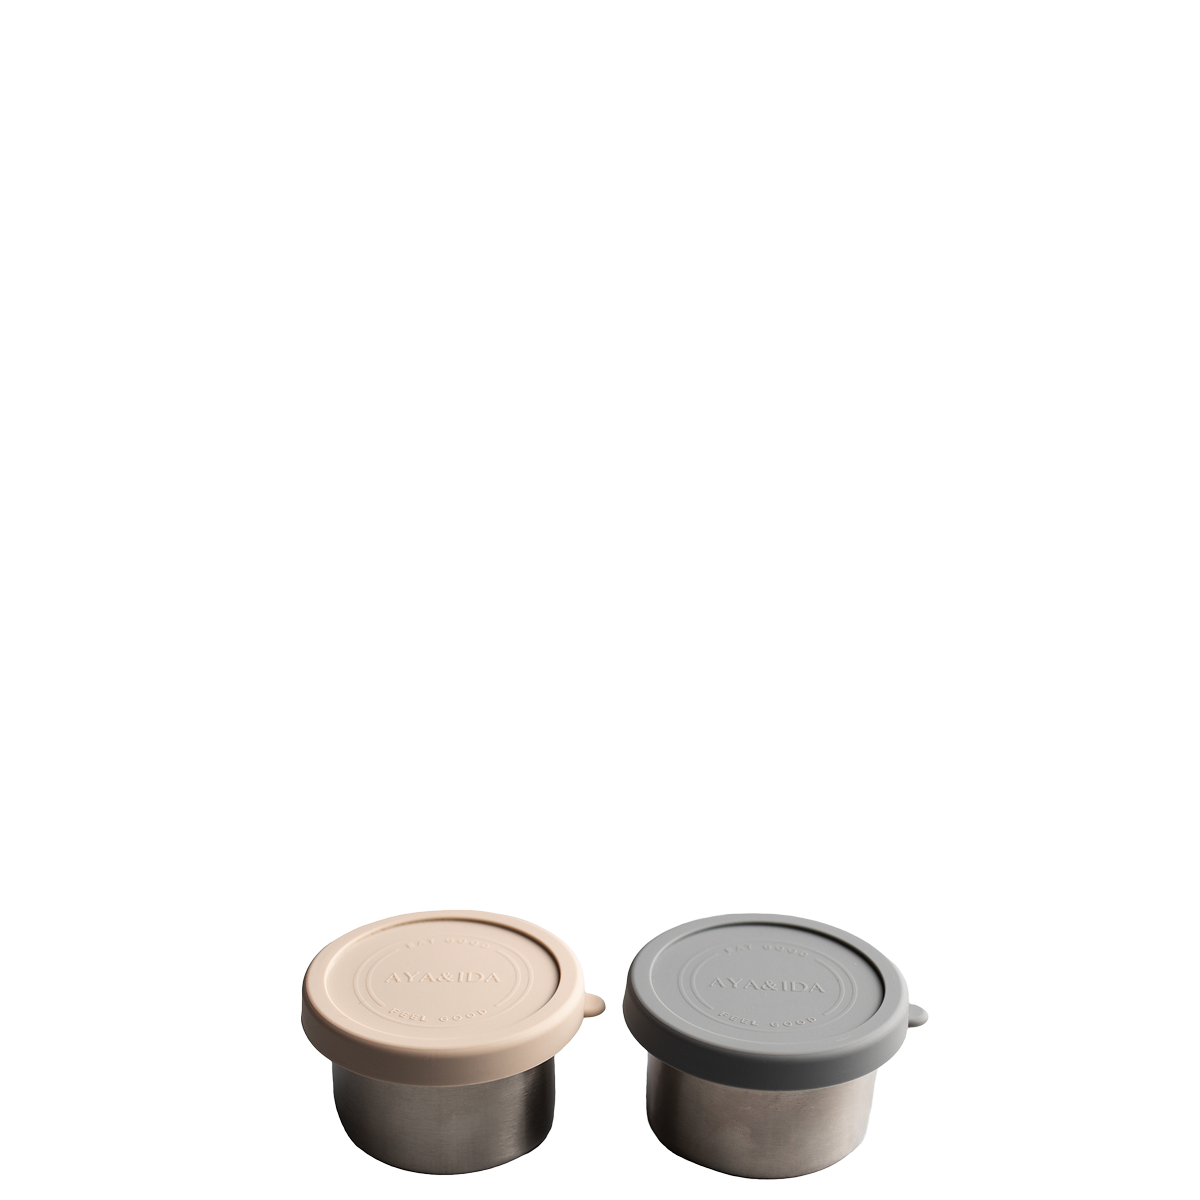 Snack Container - Dark Grey / Cream Beige - 100ML